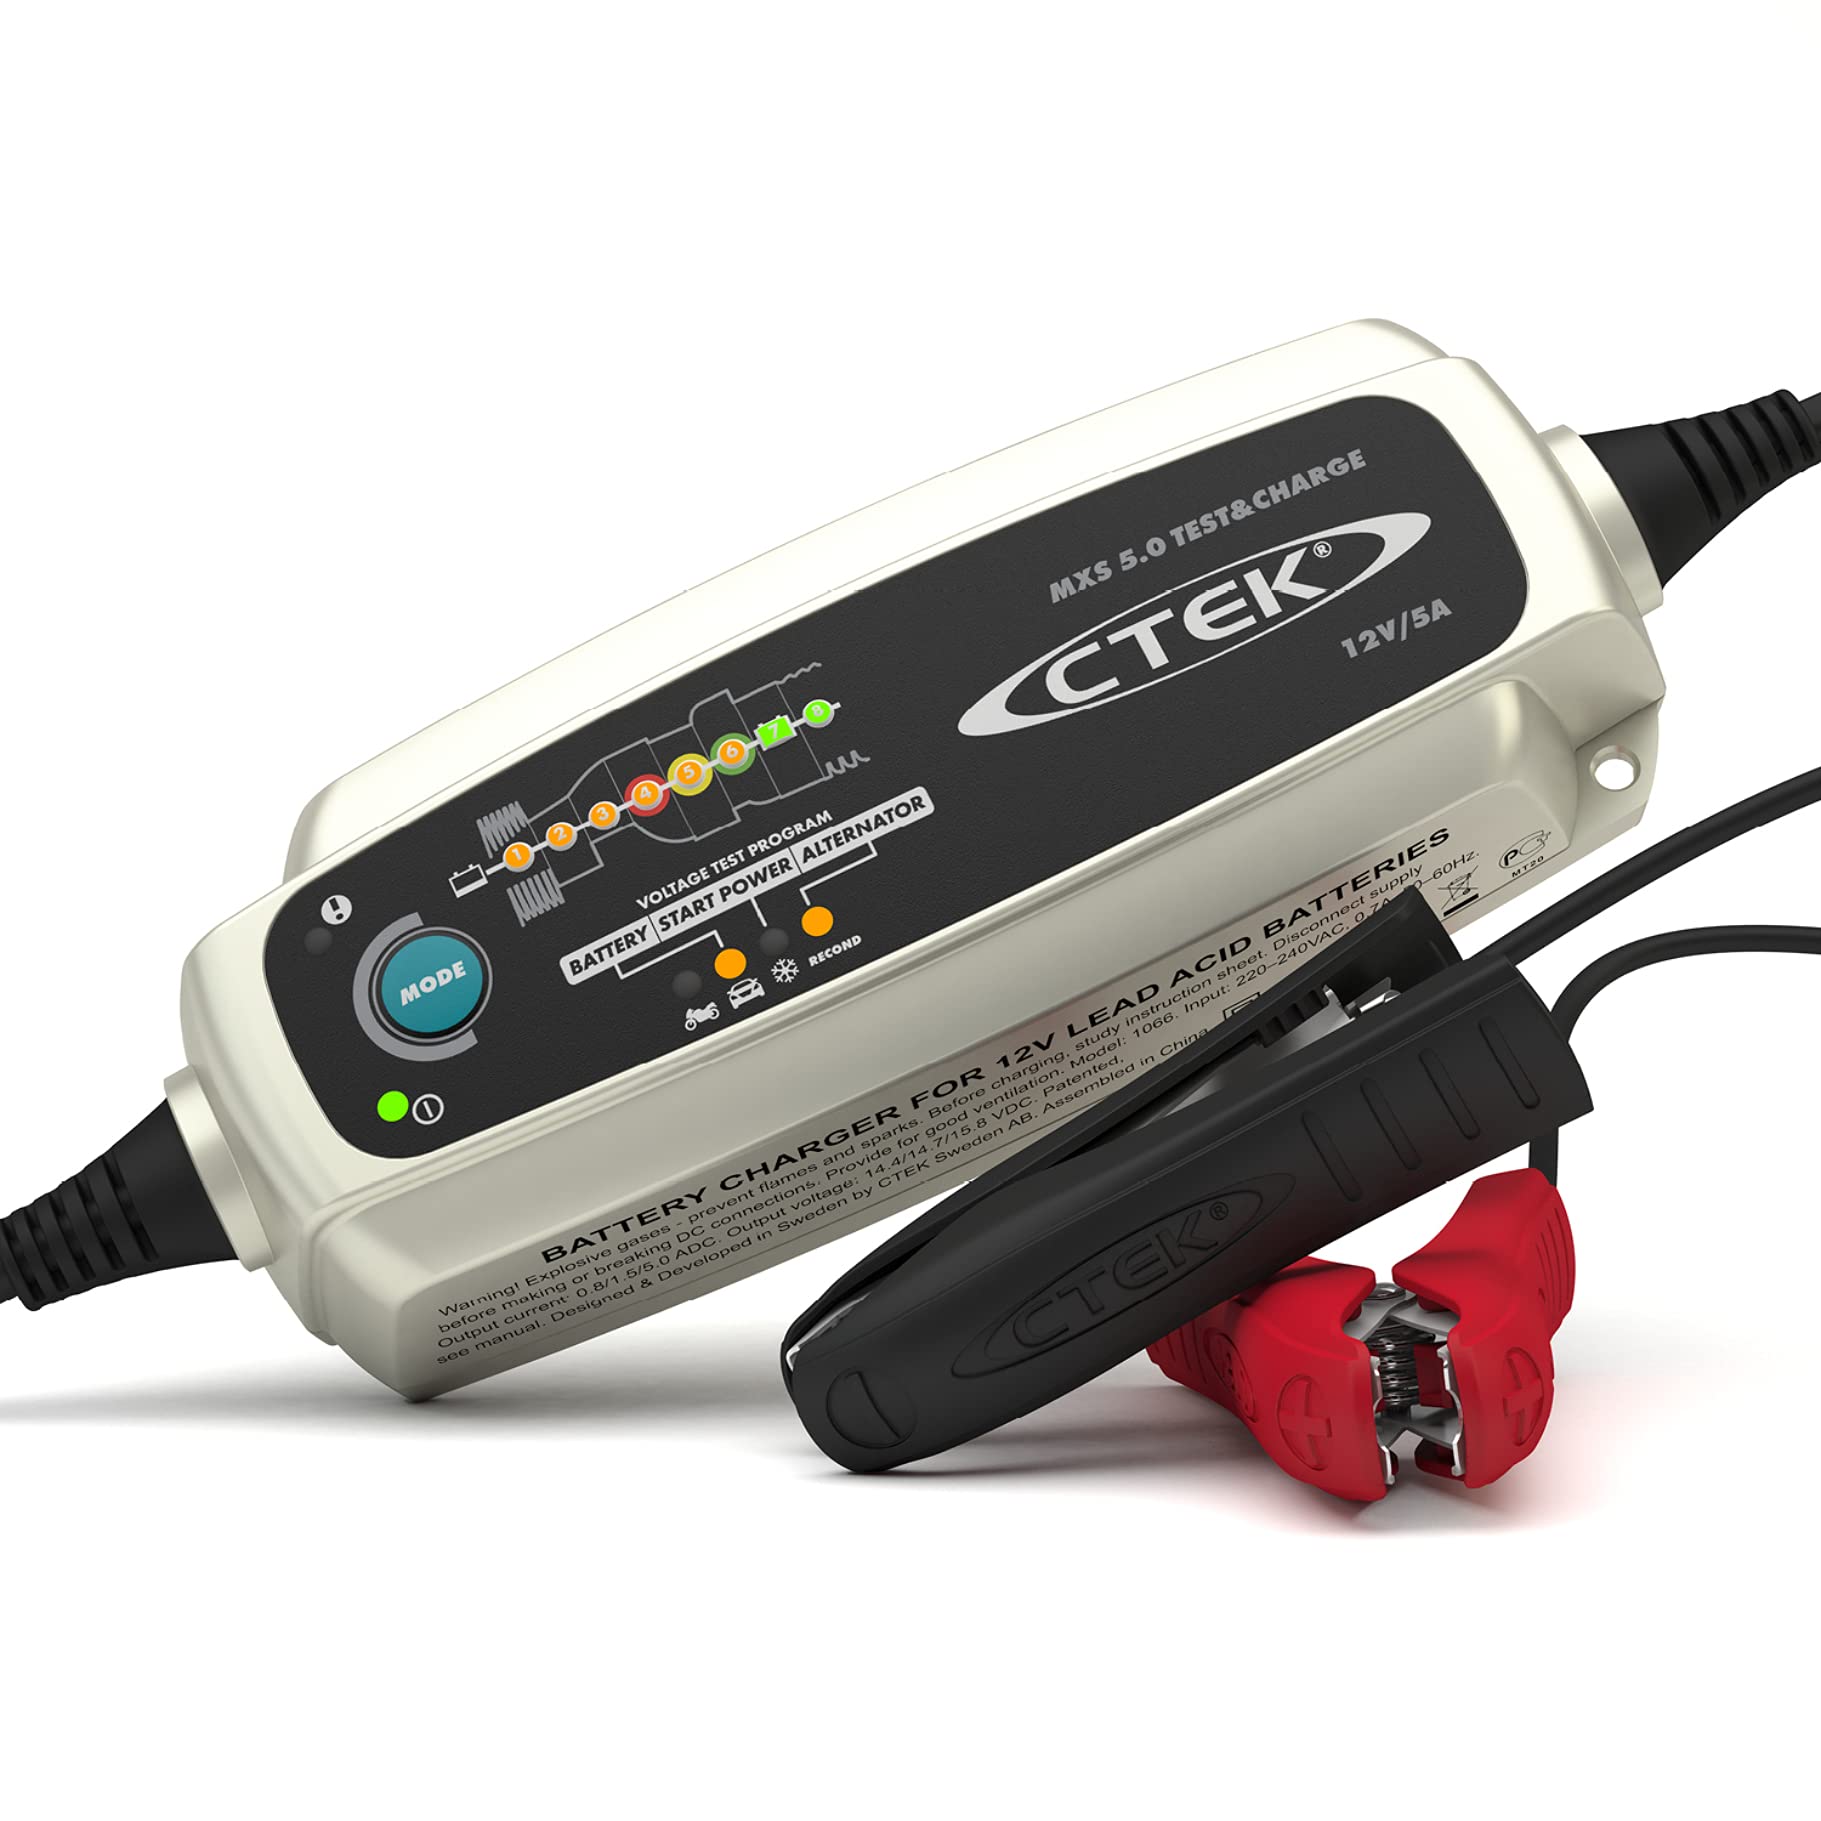 CTEK MXS 5.0 Test & Charge, Batterieladegerät 12V, Batteriepfleger, Ladegerät Auto Und LKW Ladegerät, Testet Batterie Und Lichtmaschine, Entsulfatierungsprogramm Und Rekonditionierungsmodus von CTEK